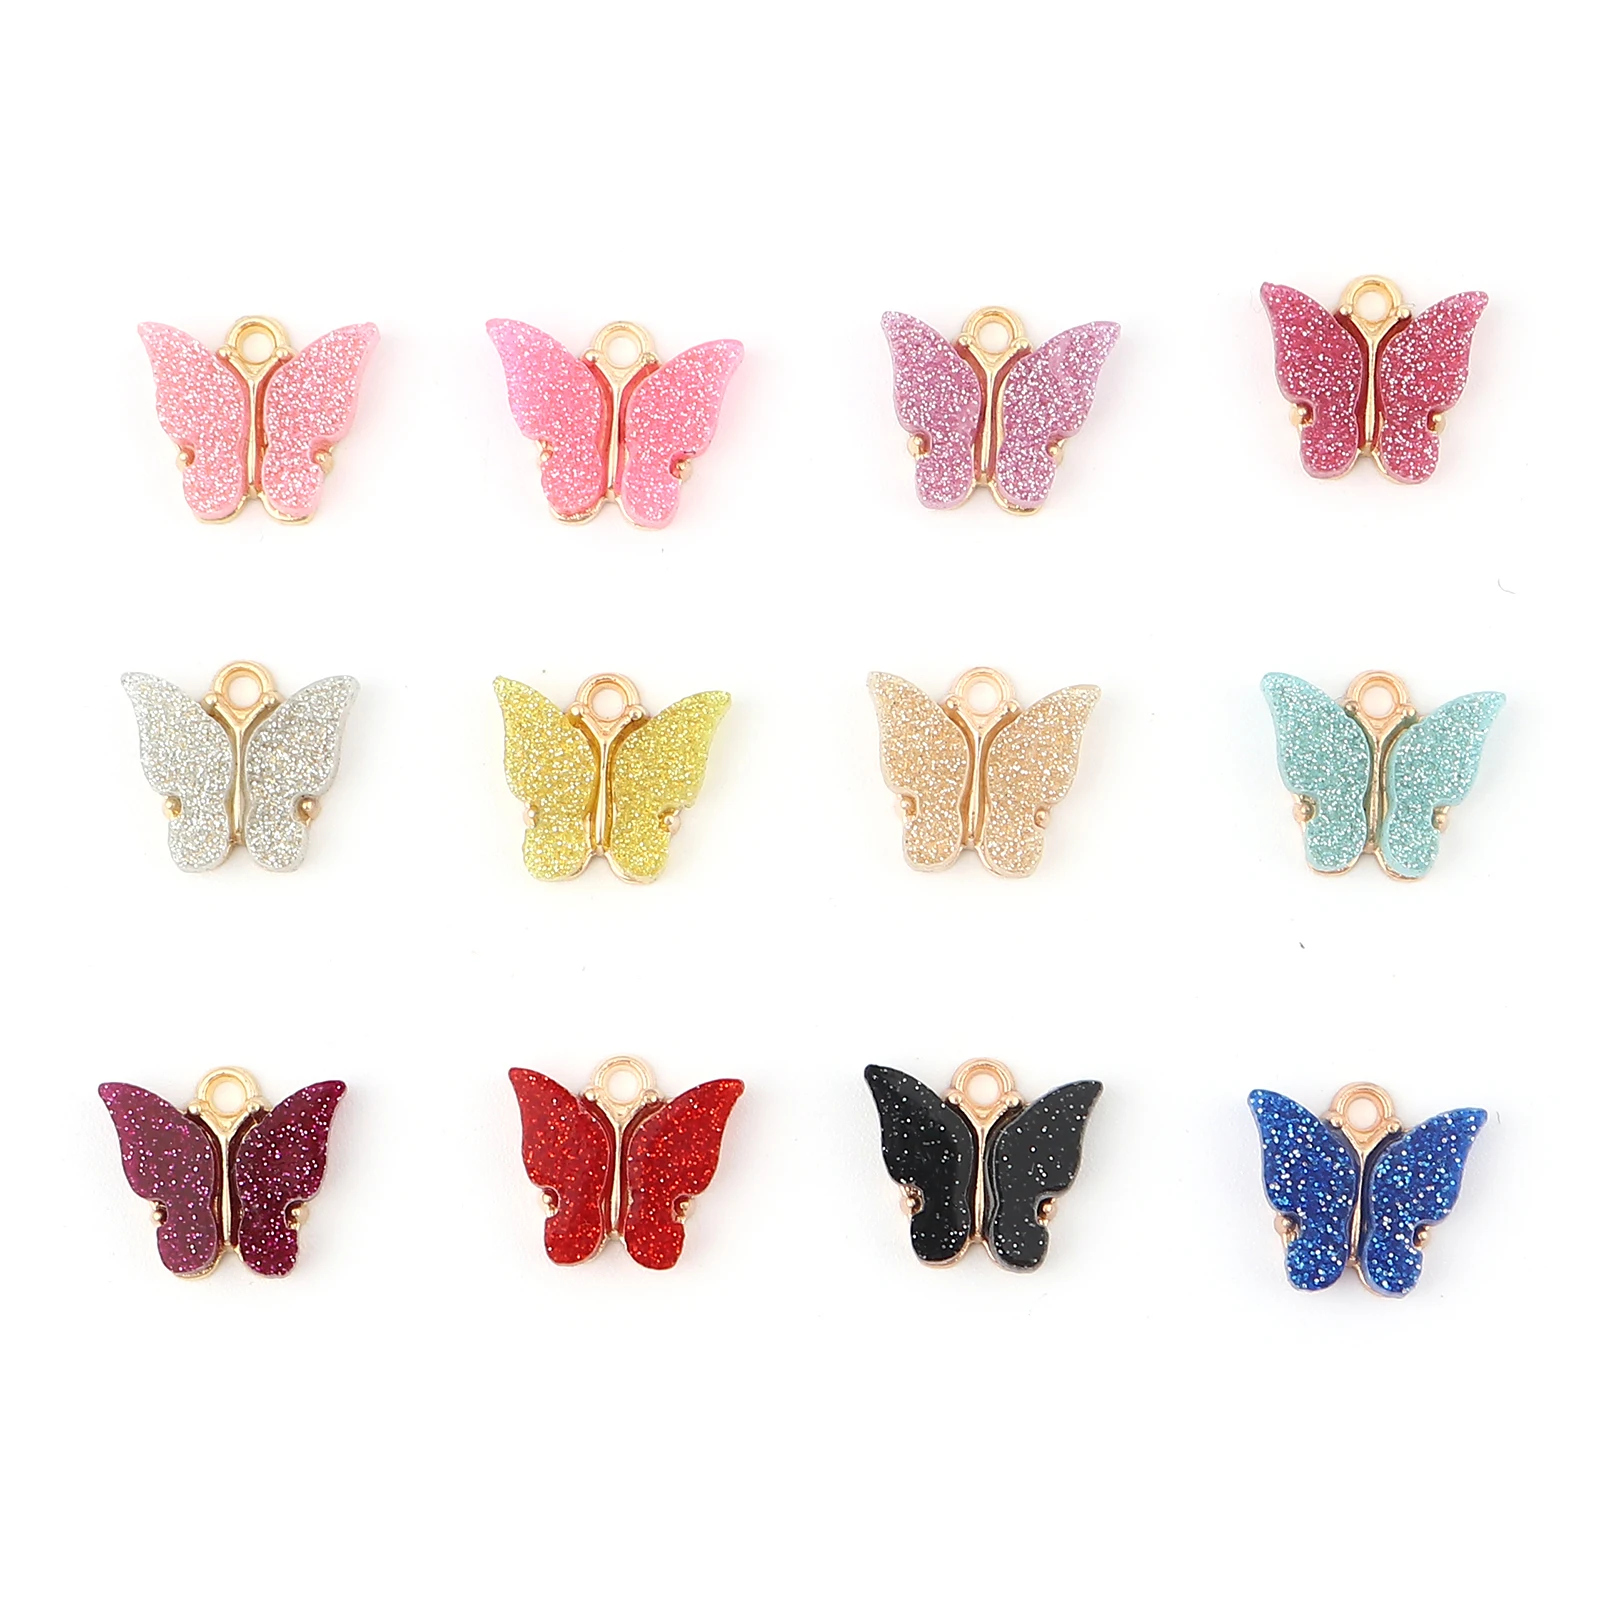 10 Adet Akrilik shınee Kelebek Takılar Böcek Hayvan Kolye Altın Renk DIY Kolye Küpe Takı Yapımı Kolye Bulma